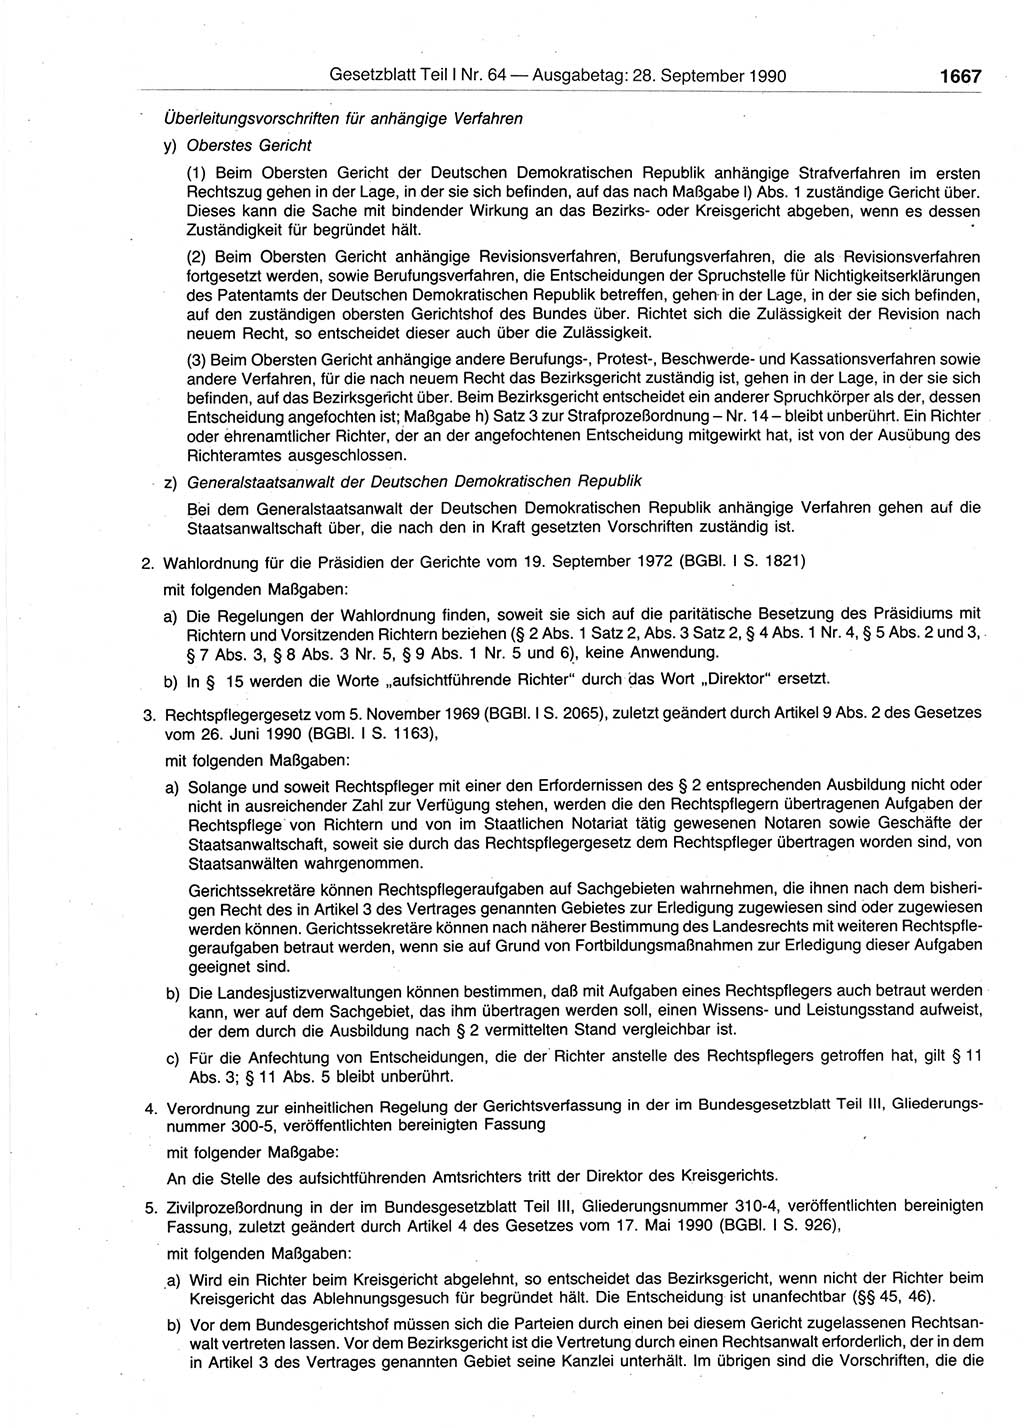 Gesetzblatt (GBl.) der Deutschen Demokratischen Republik (DDR) Teil Ⅰ 1990, Seite 1667 (GBl. DDR Ⅰ 1990, S. 1667)